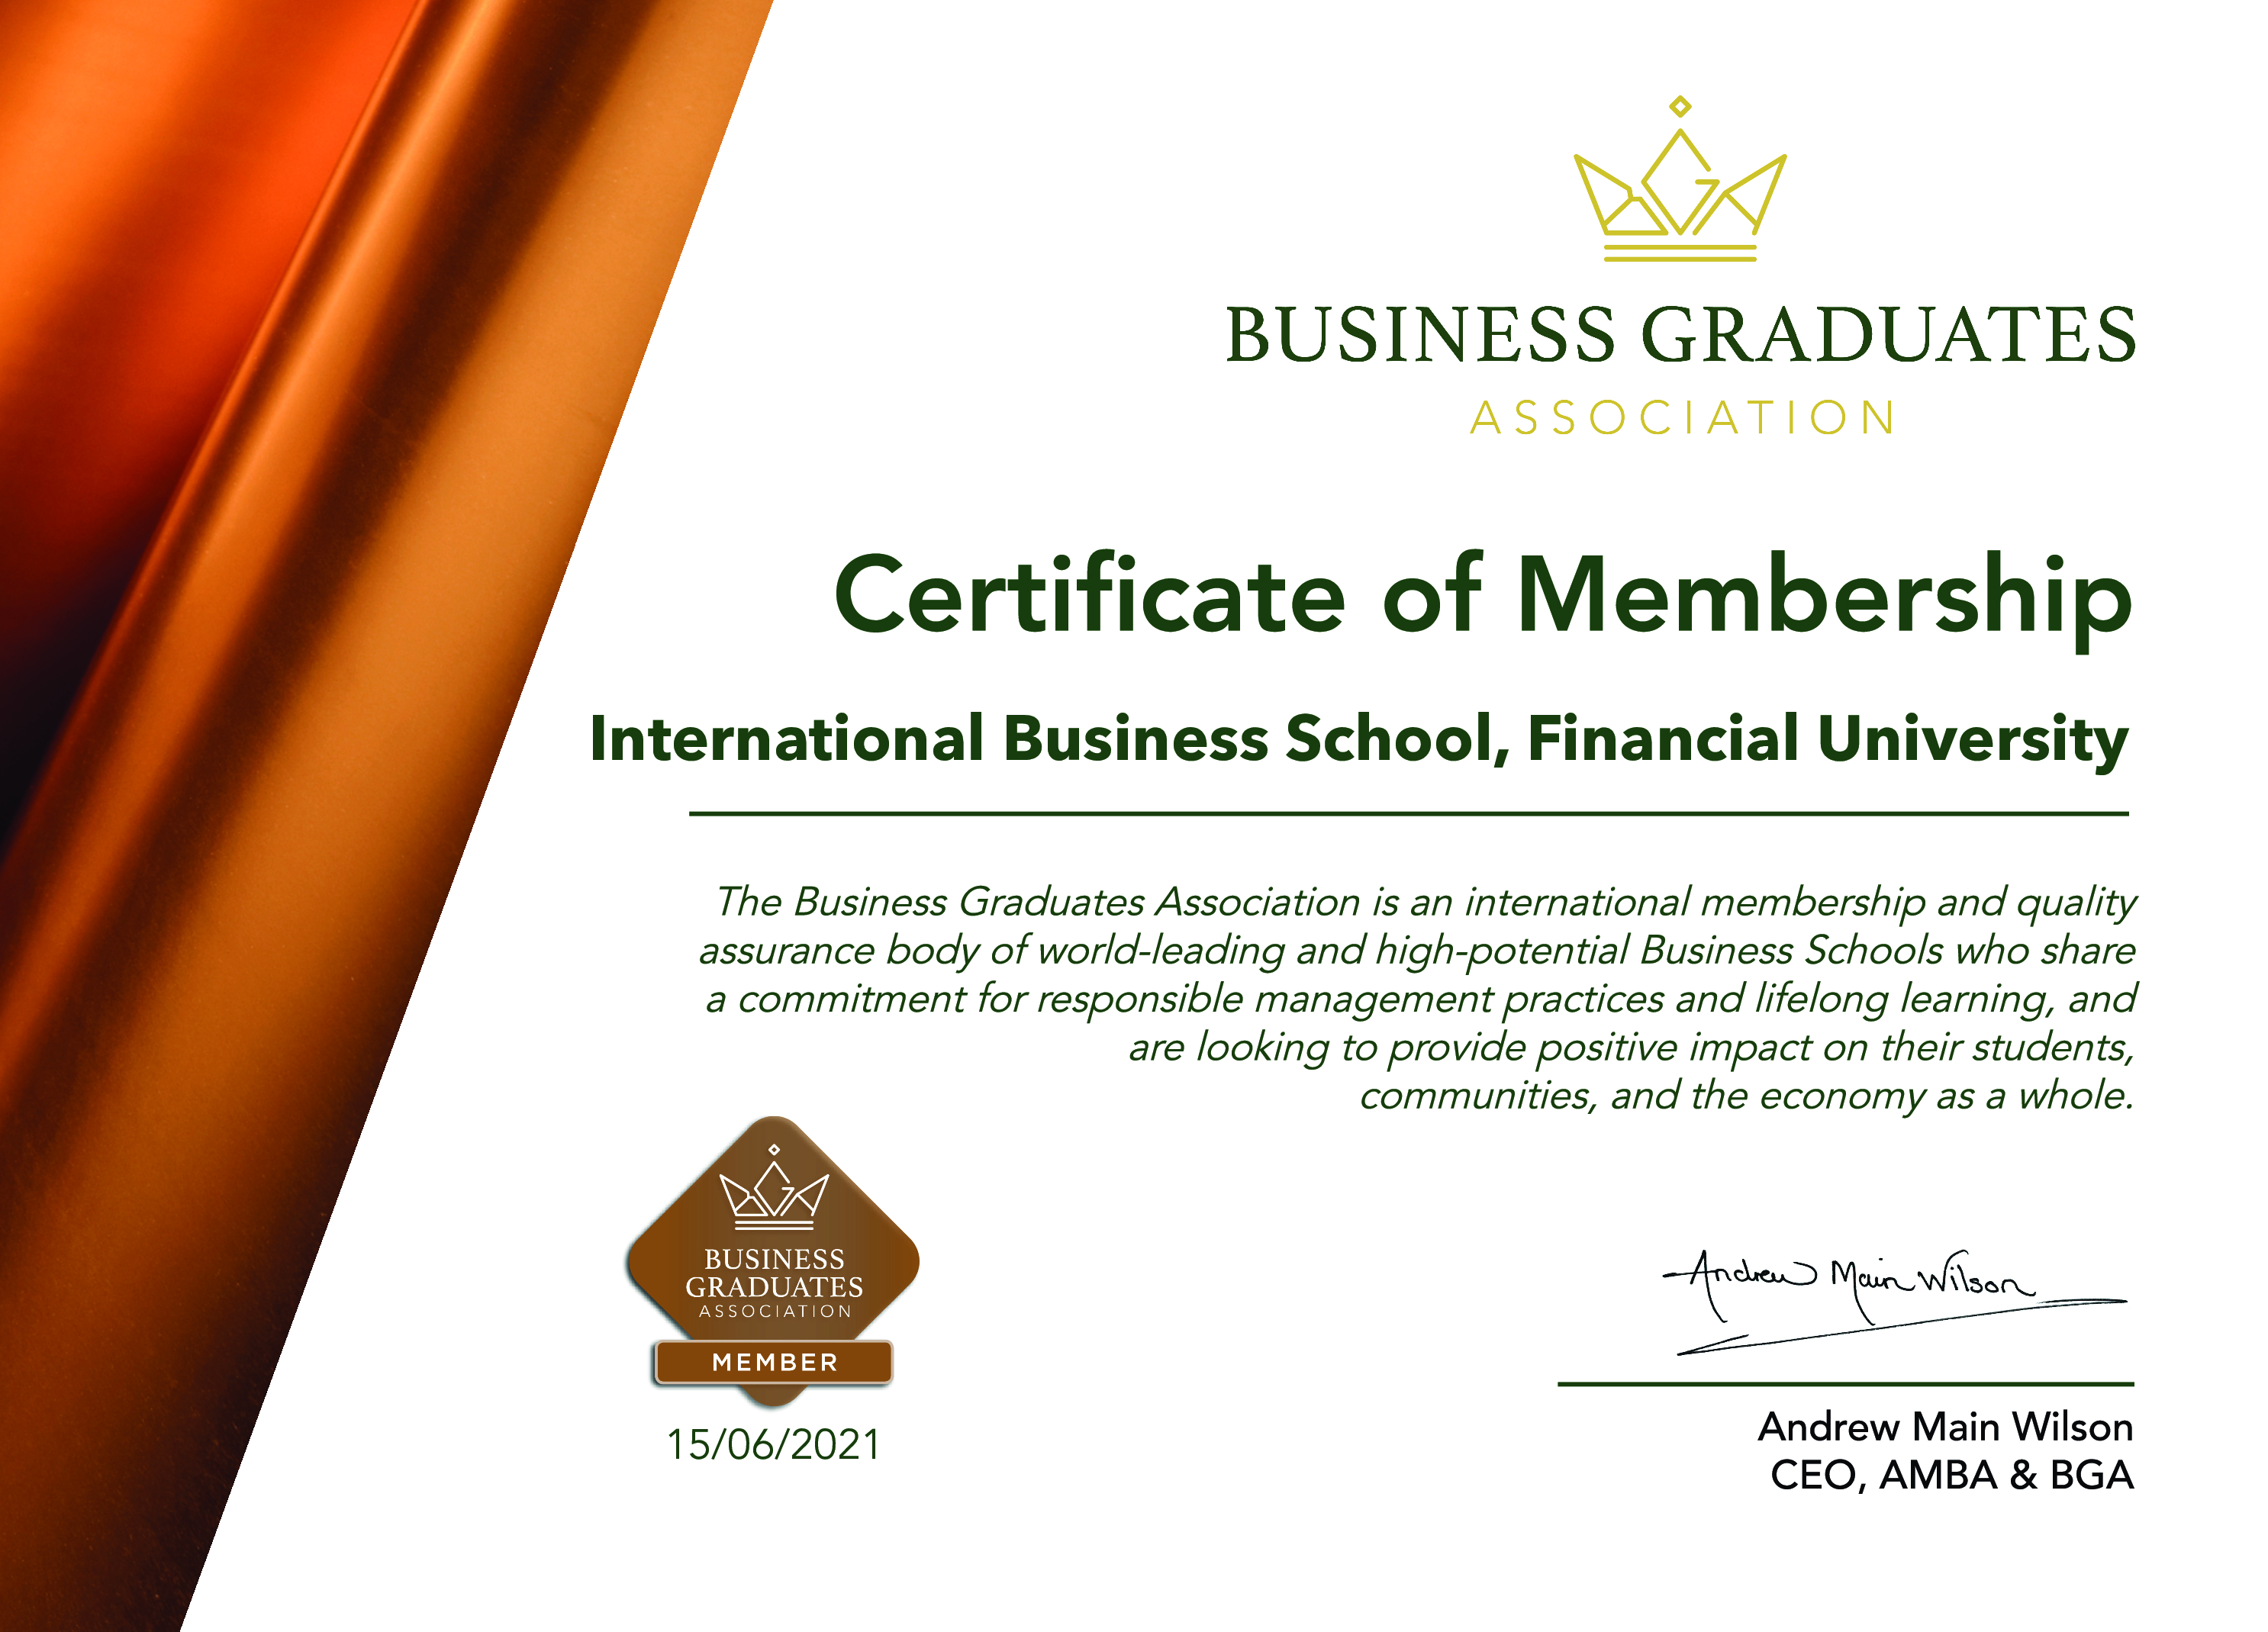 IBS-FiU-BGA-Member-School-Certificate.jpg